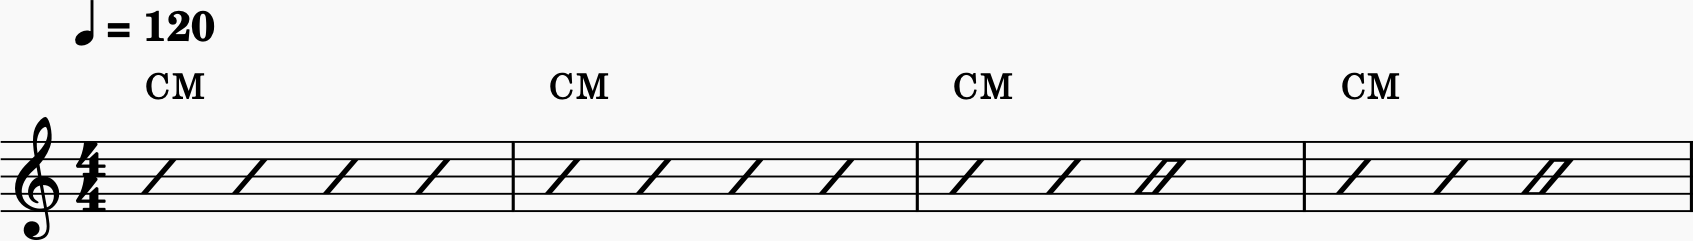 Chord chart piano sheet music